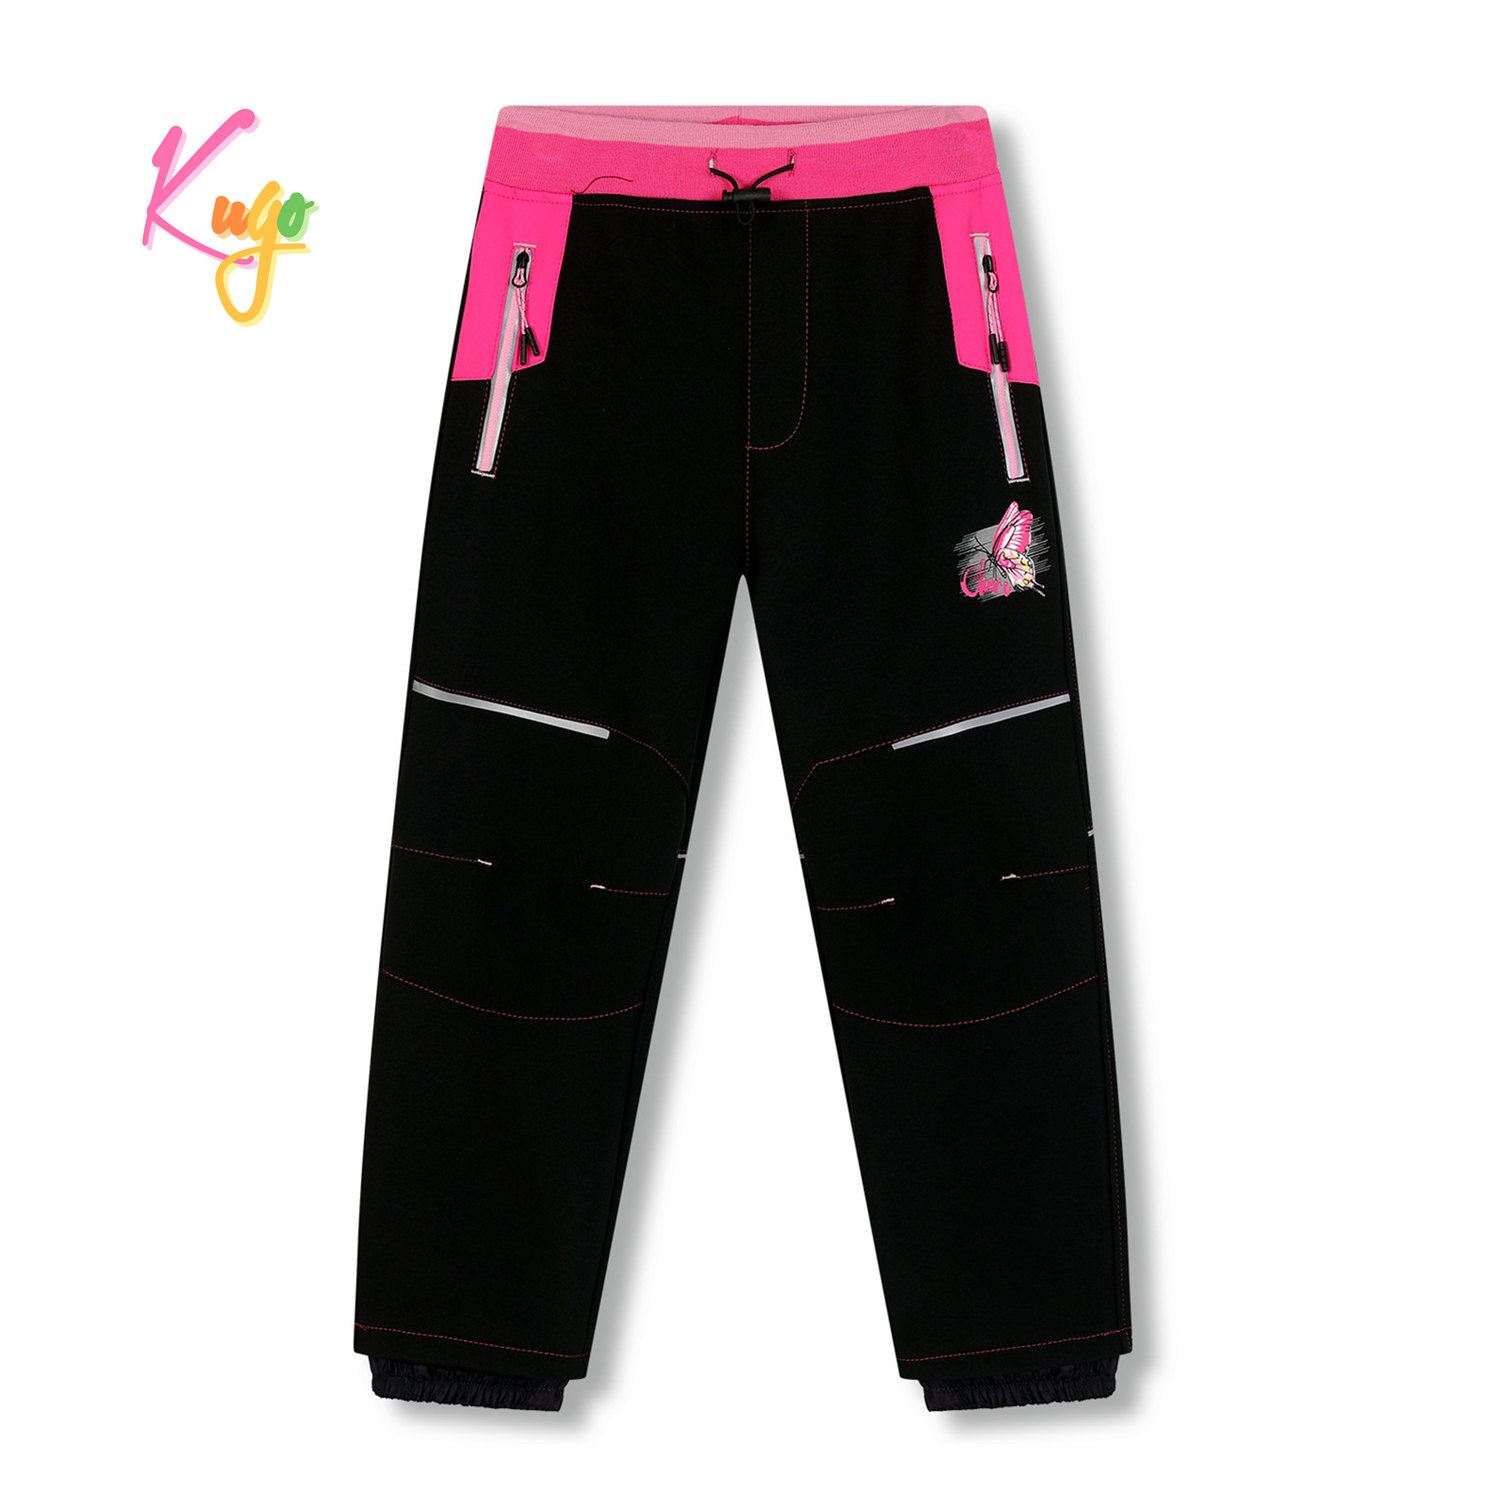 Dívčí softshellové kalhoty, zateplené - KUGO HK5612, černá / růžový pas Barva: Černá, Velikost: 110